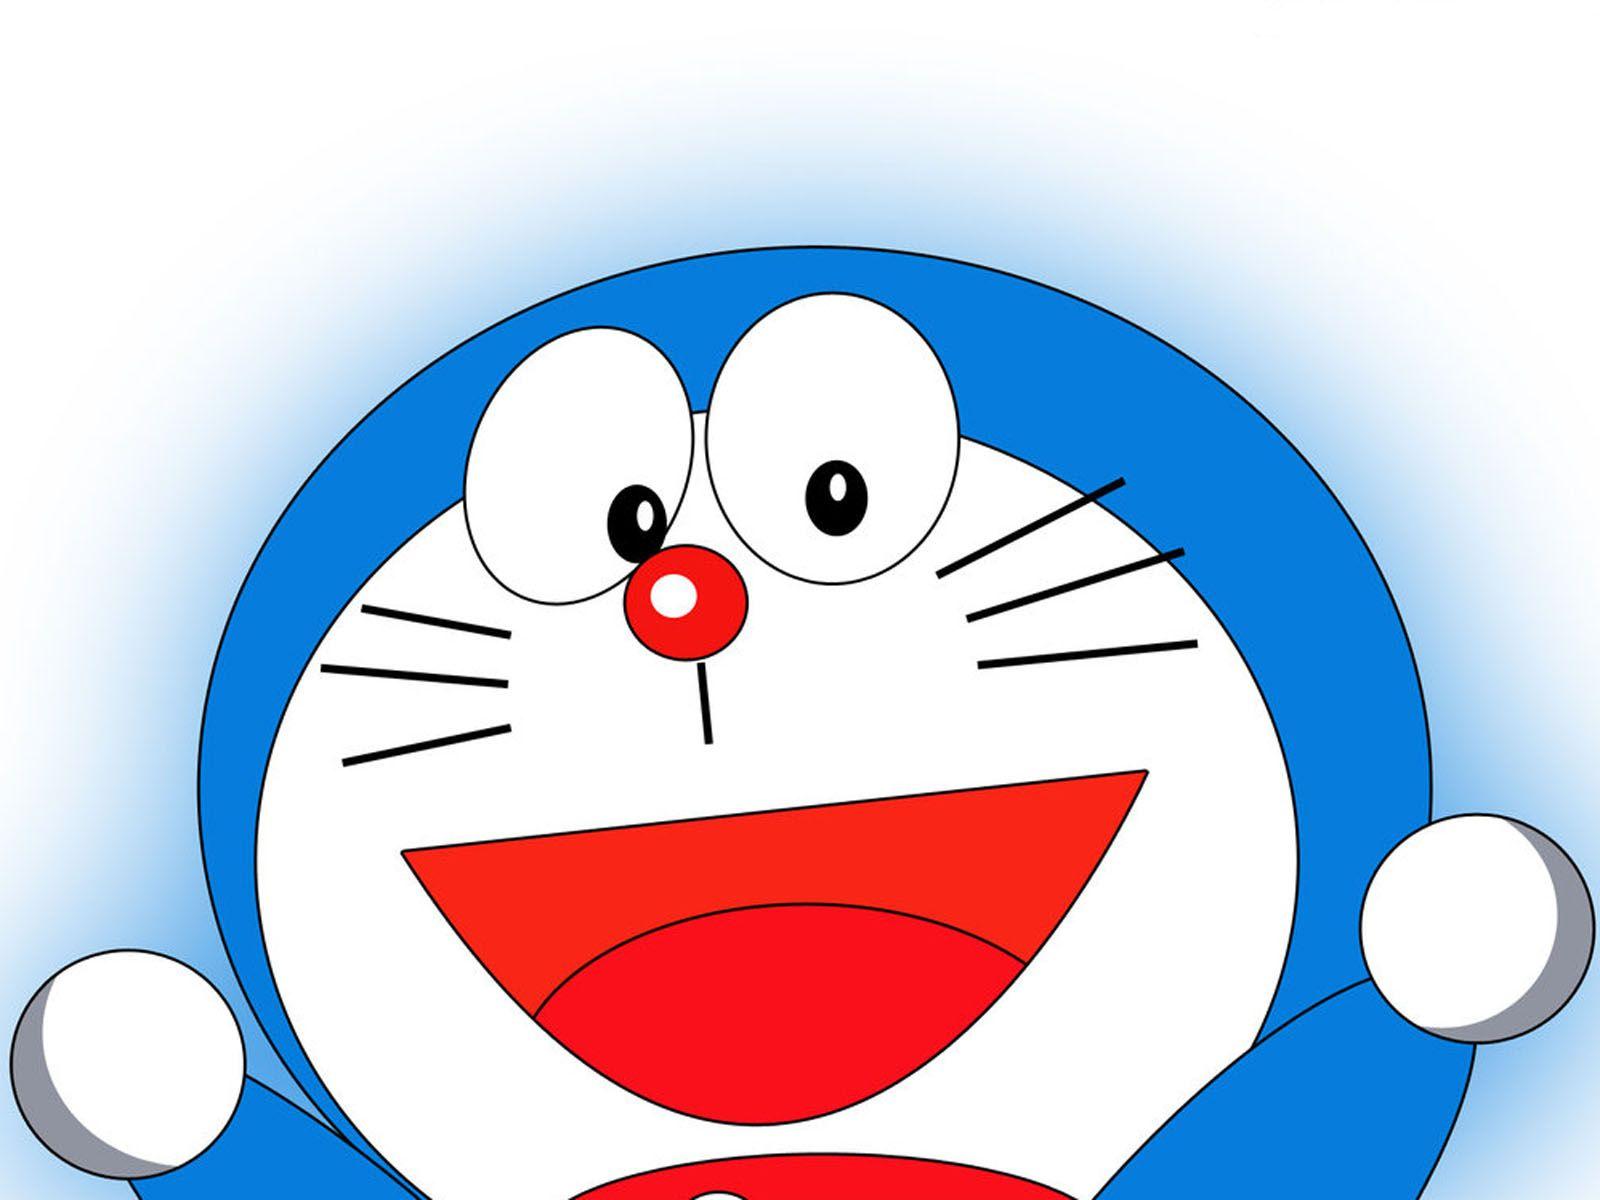 Tải ngay hình nền Doraemon máy tính để bàn để mang lại sự mới mẻ cho không gian làm việc của bạn! Với những hình ảnh đáng yêu và sống động của Doraemon cùng những phiên bản nền tối, nền sáng, hình nền Doraemon máy tính sẽ làm cho mọi người xung quanh đều ghen tị về sự sáng tạo và tính cách riêng của bạn.